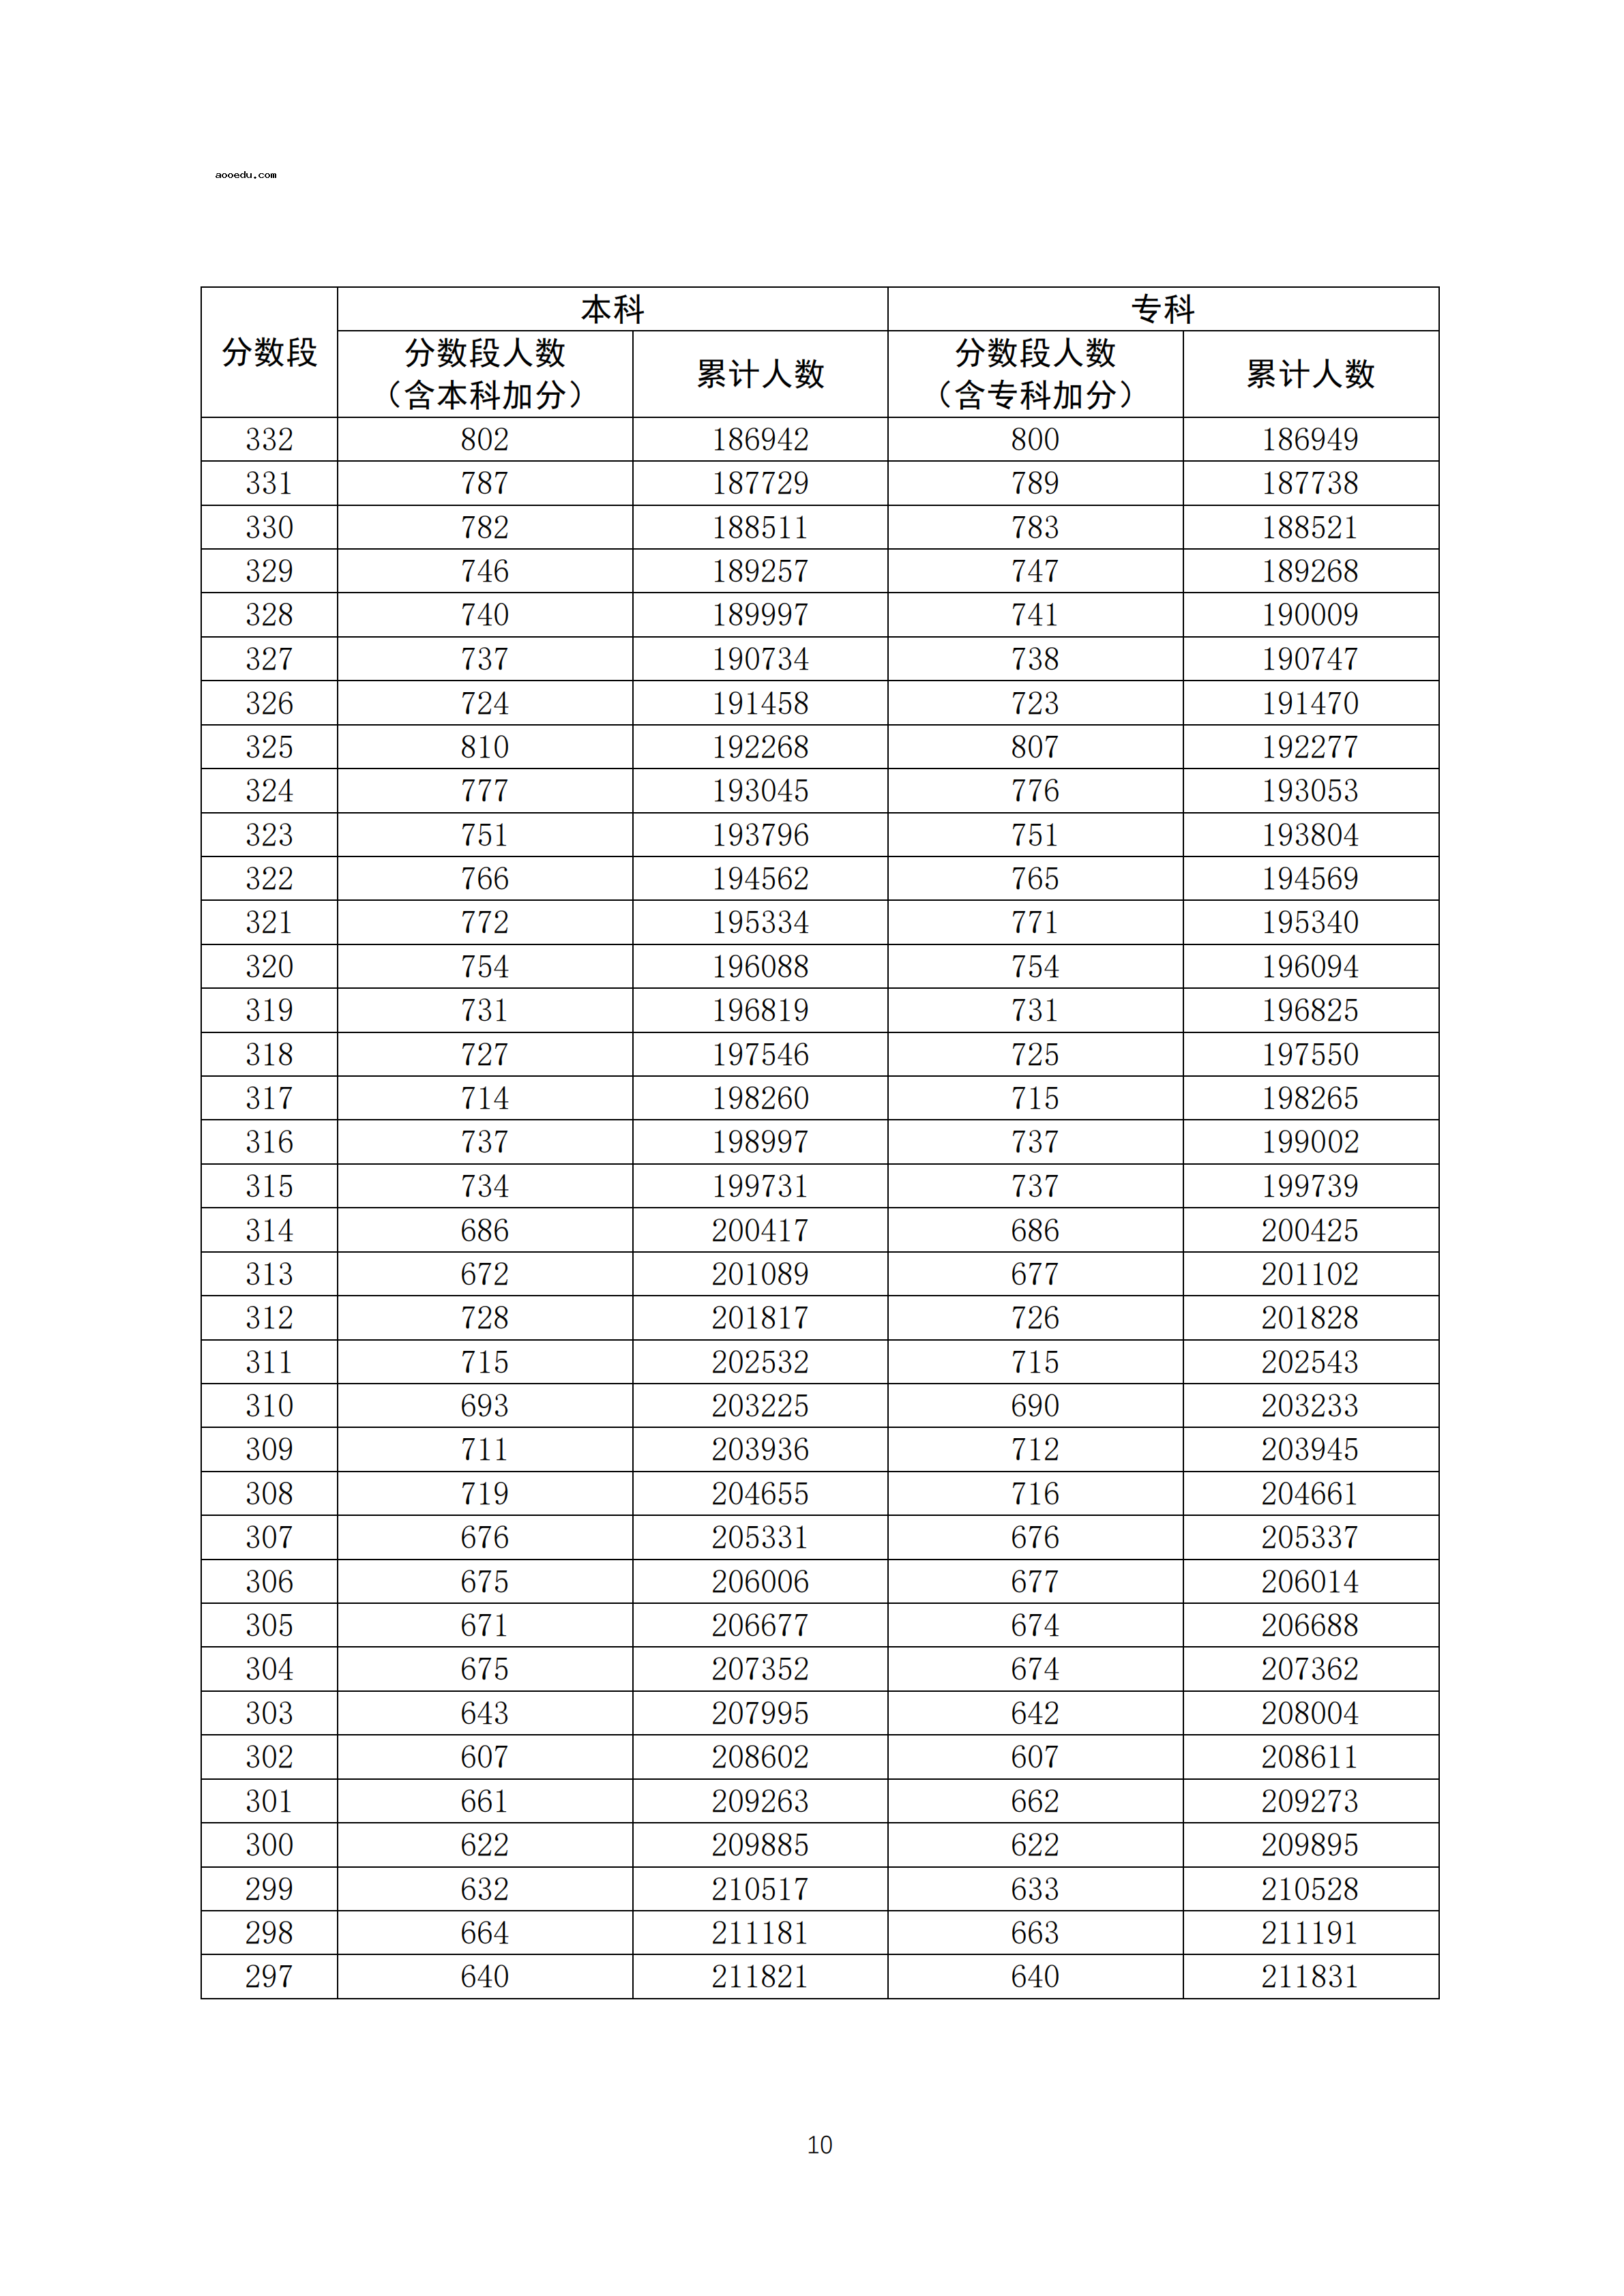 2020广东高考一分一段表 文科成绩排名【最新公布】